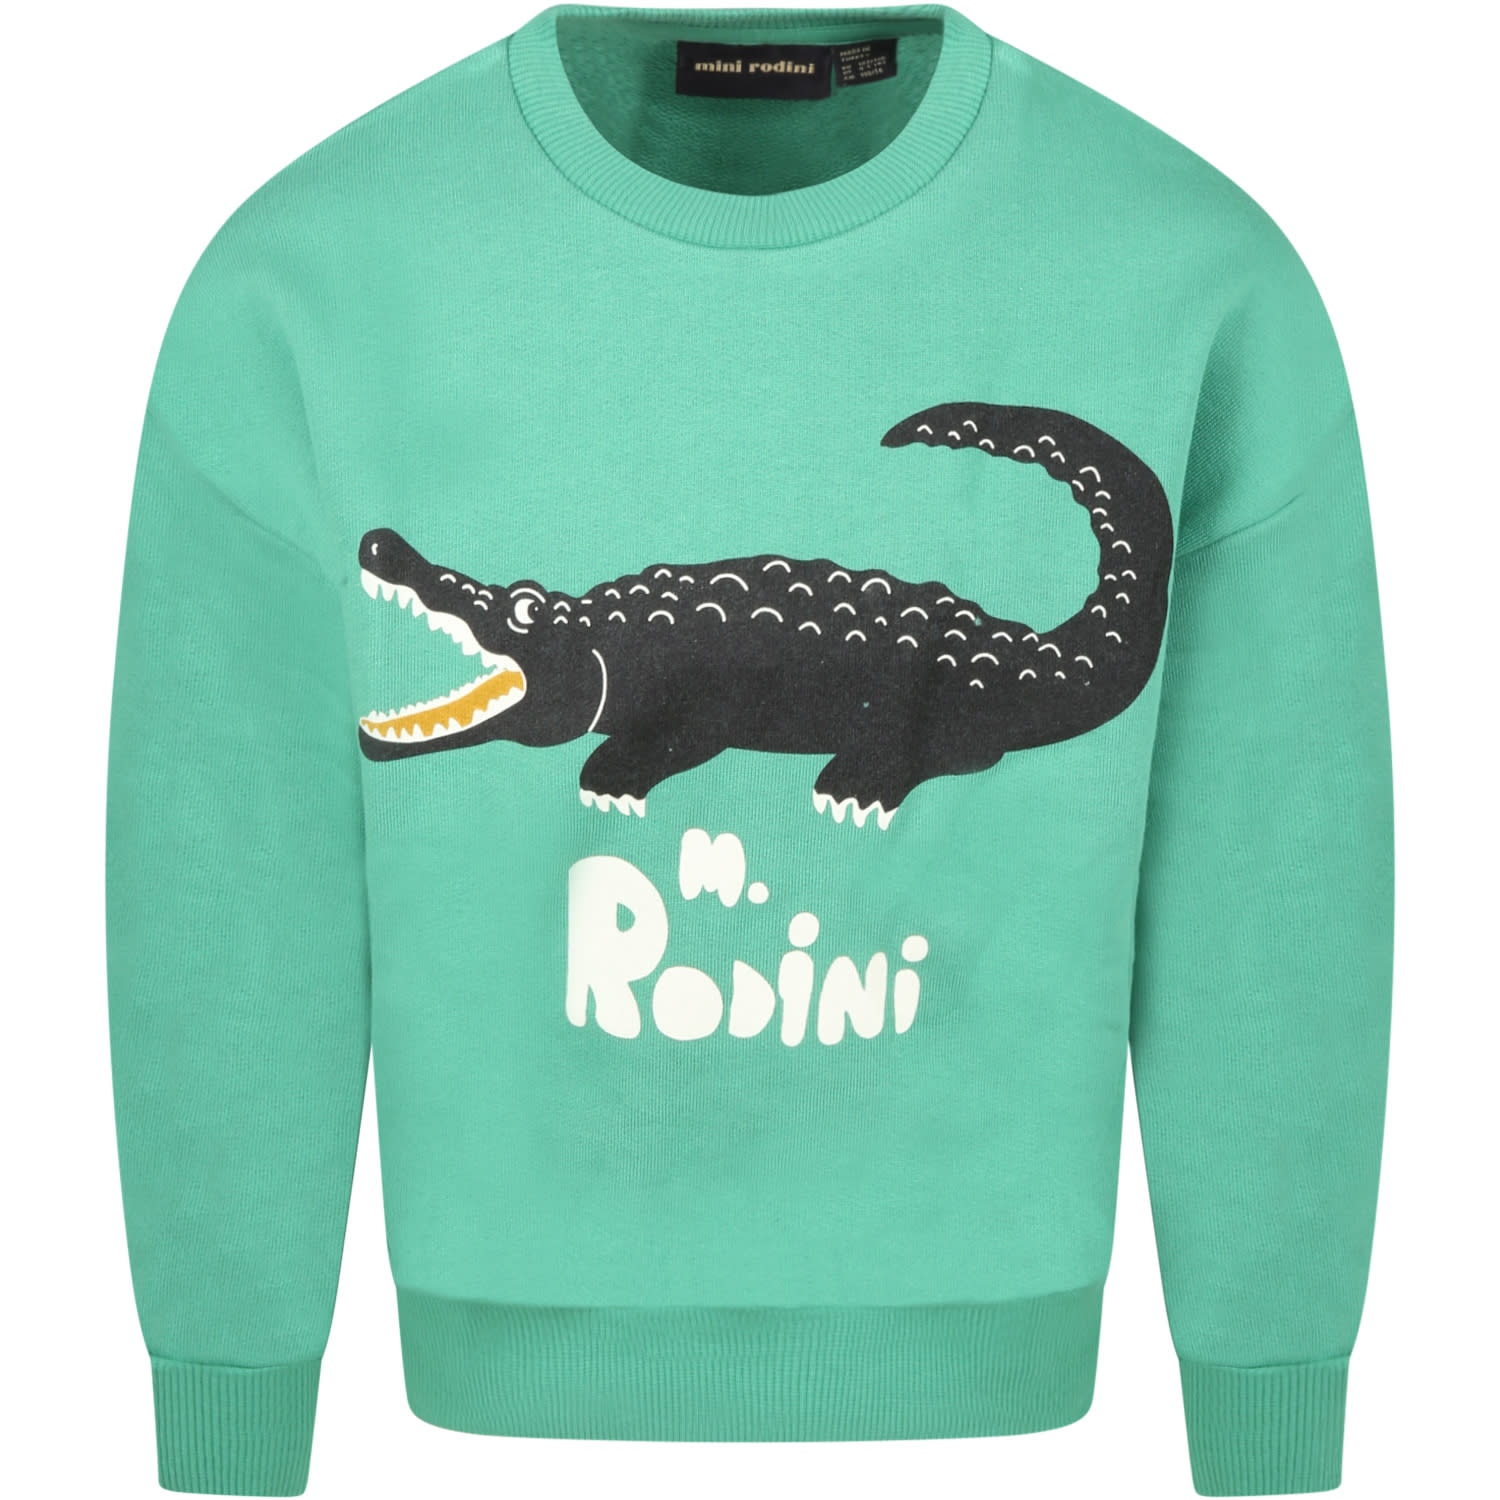 Mini Rodini Green Sweatshirt For Kids With Crocodile